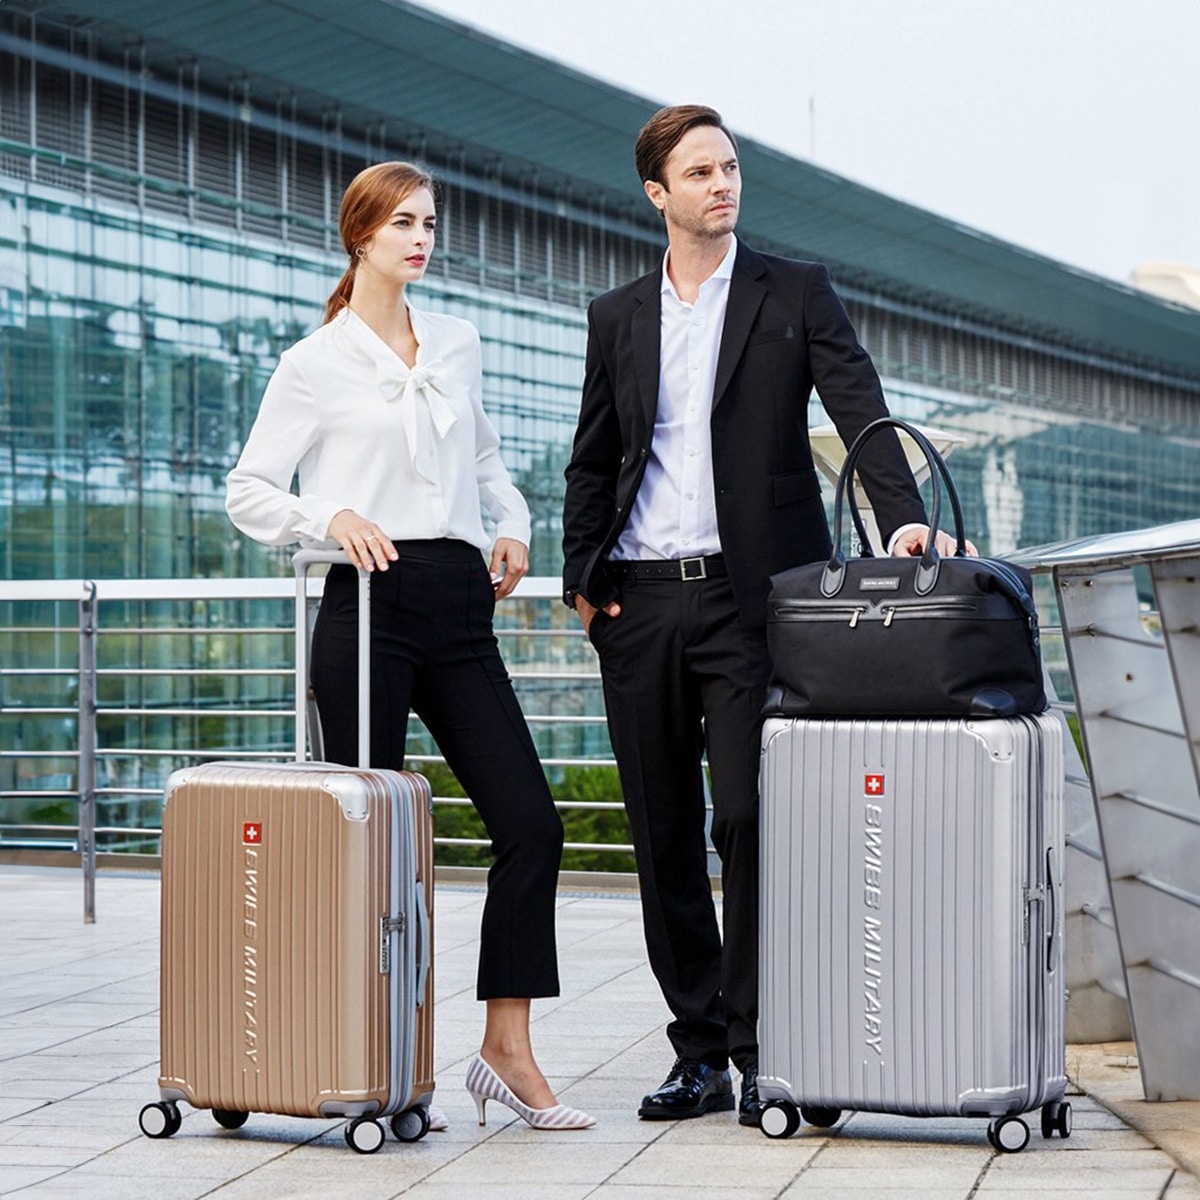 スーツケース 大型 Lサイズ 一週間以上 75cm 98L 5cm拡張 TSAロック 